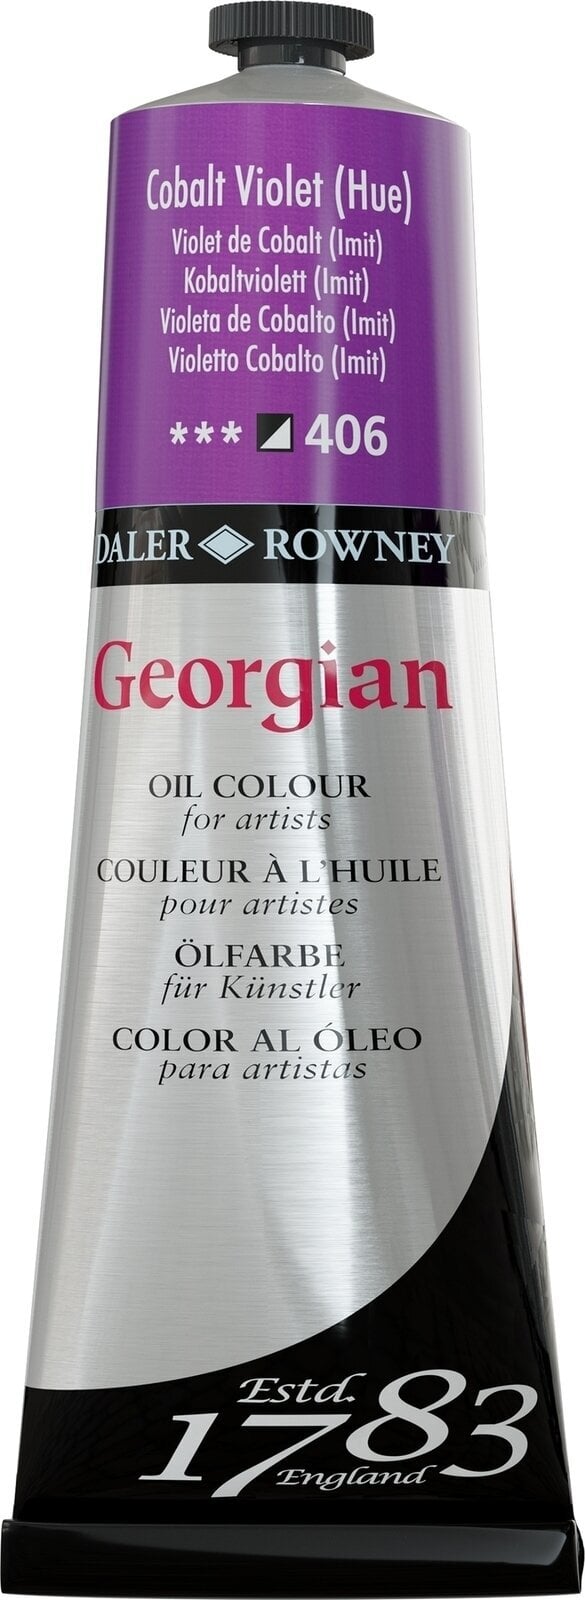 Aceite de colores Daler Rowney Georgian Oil Paint Cobalt Violet Hue 225 ml 1 pc